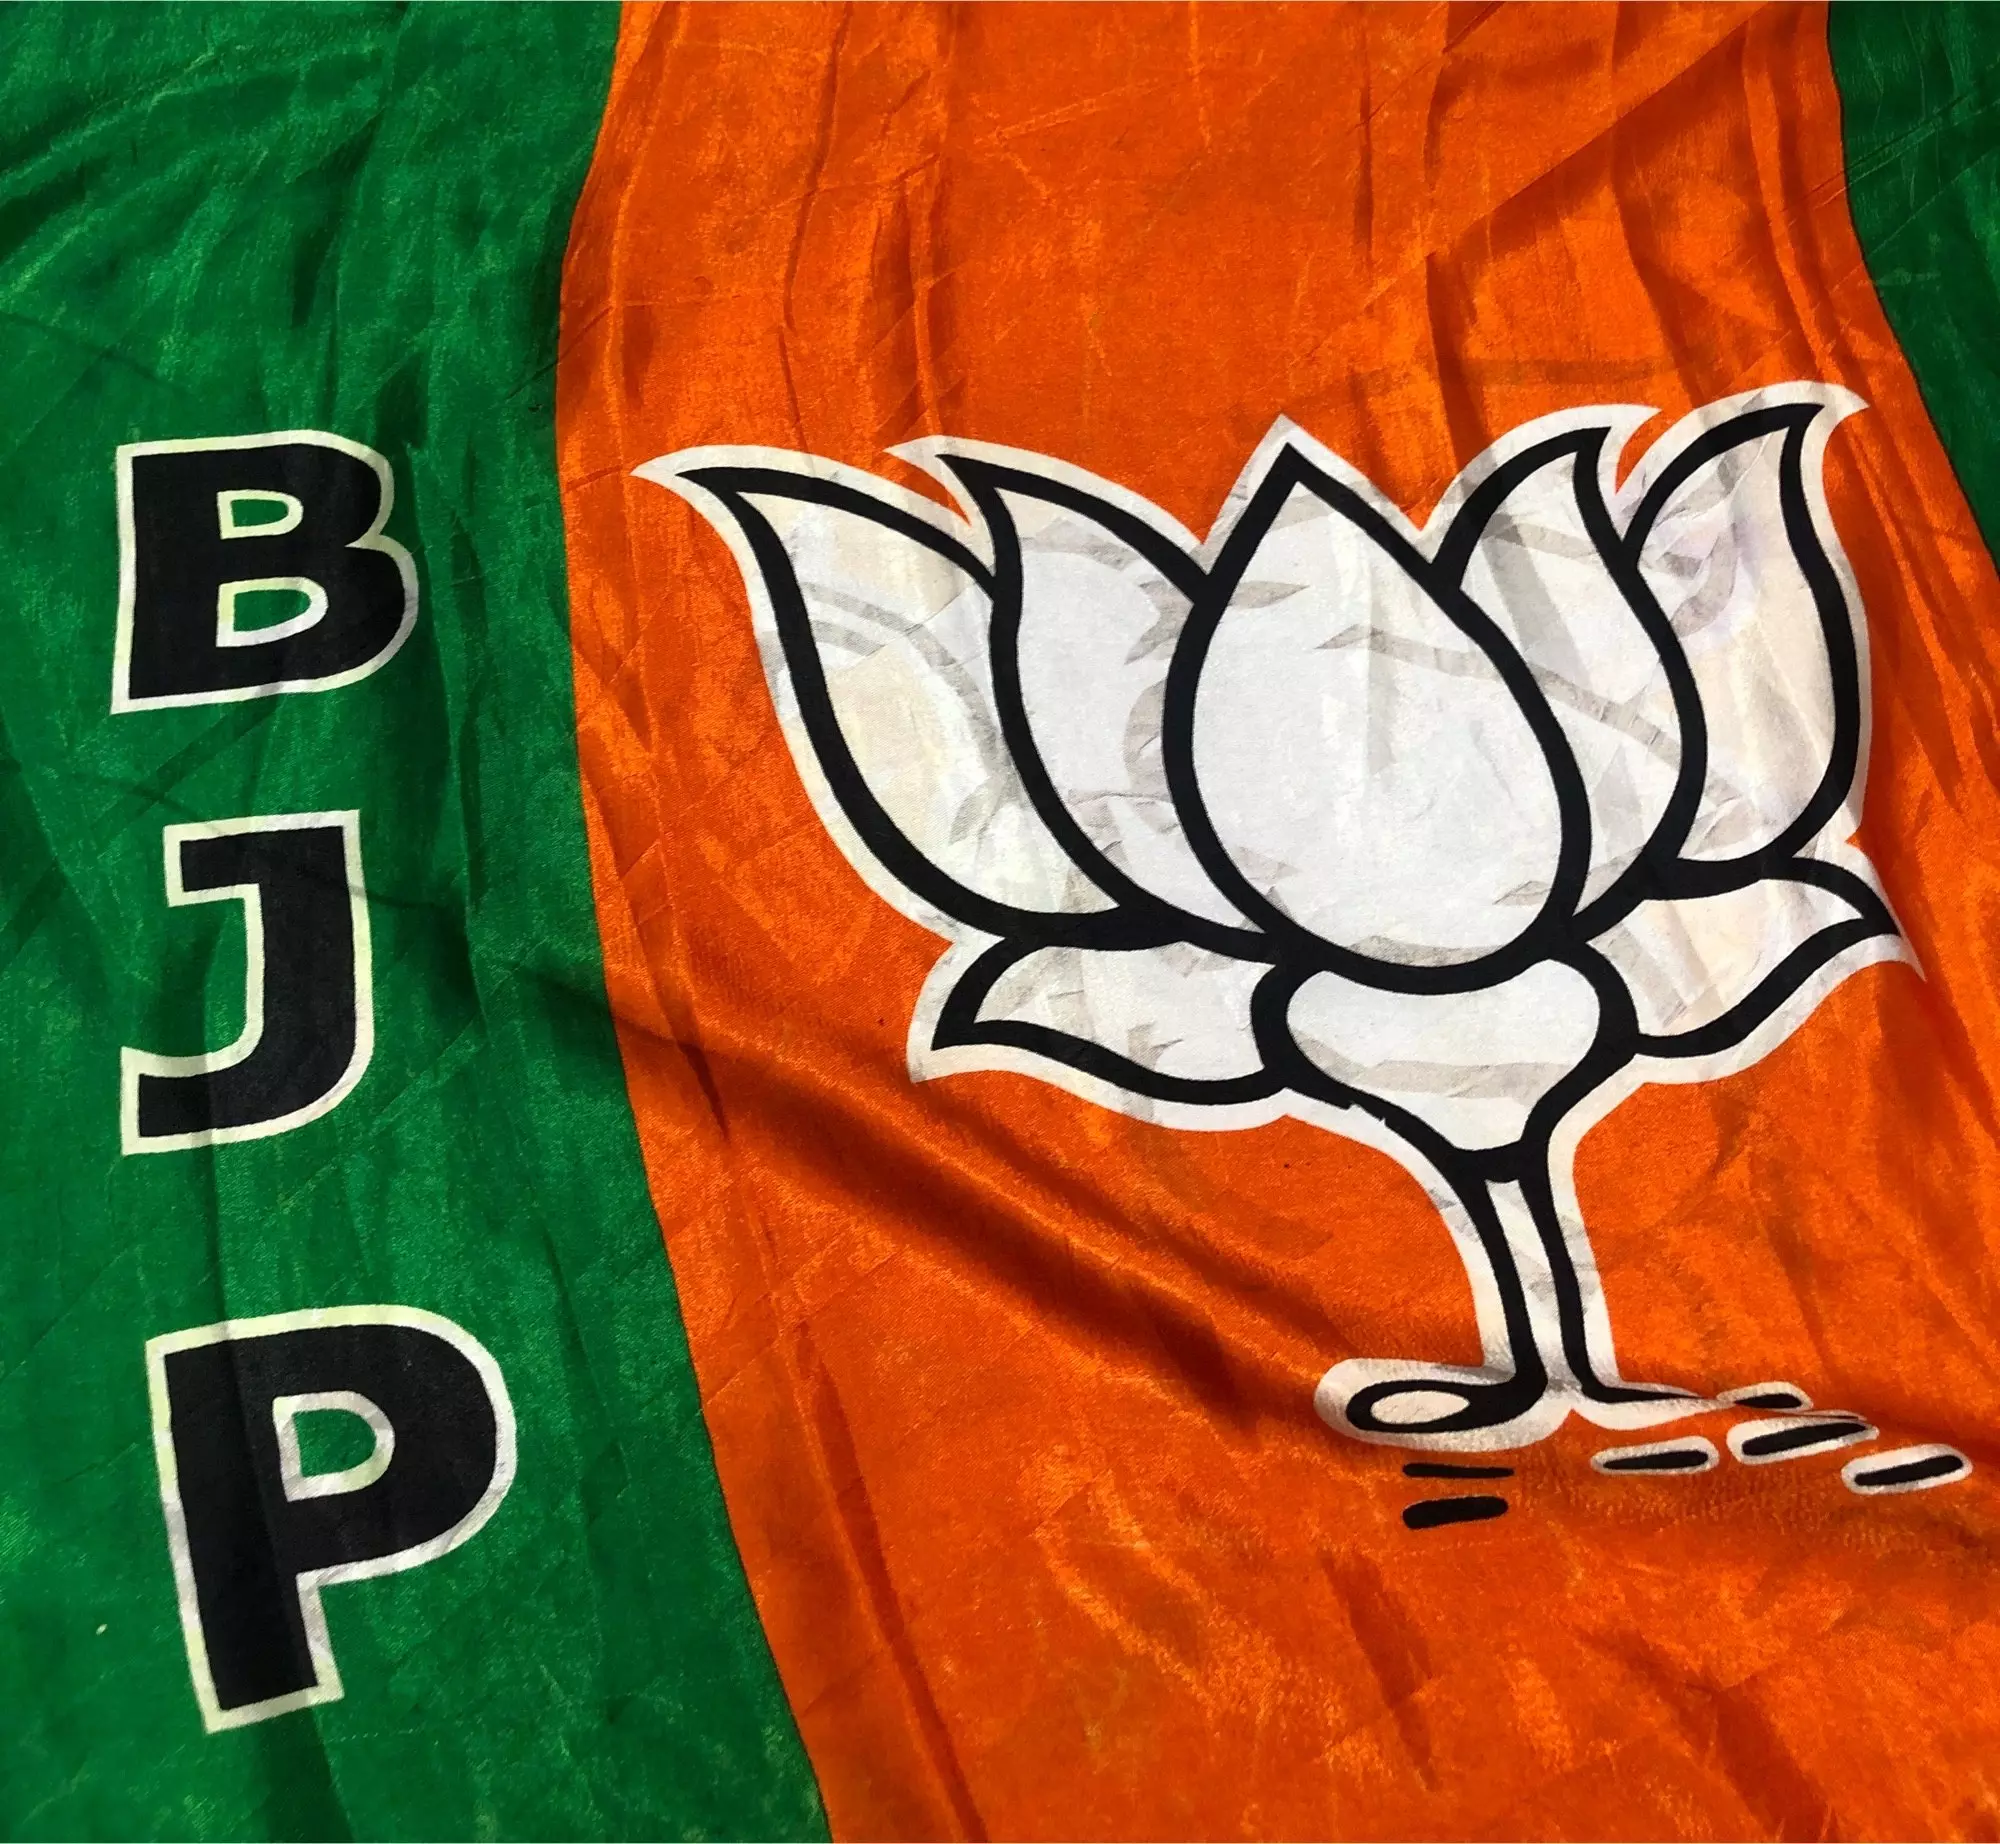 BJPs balancing act for North and Coastal Karnataka